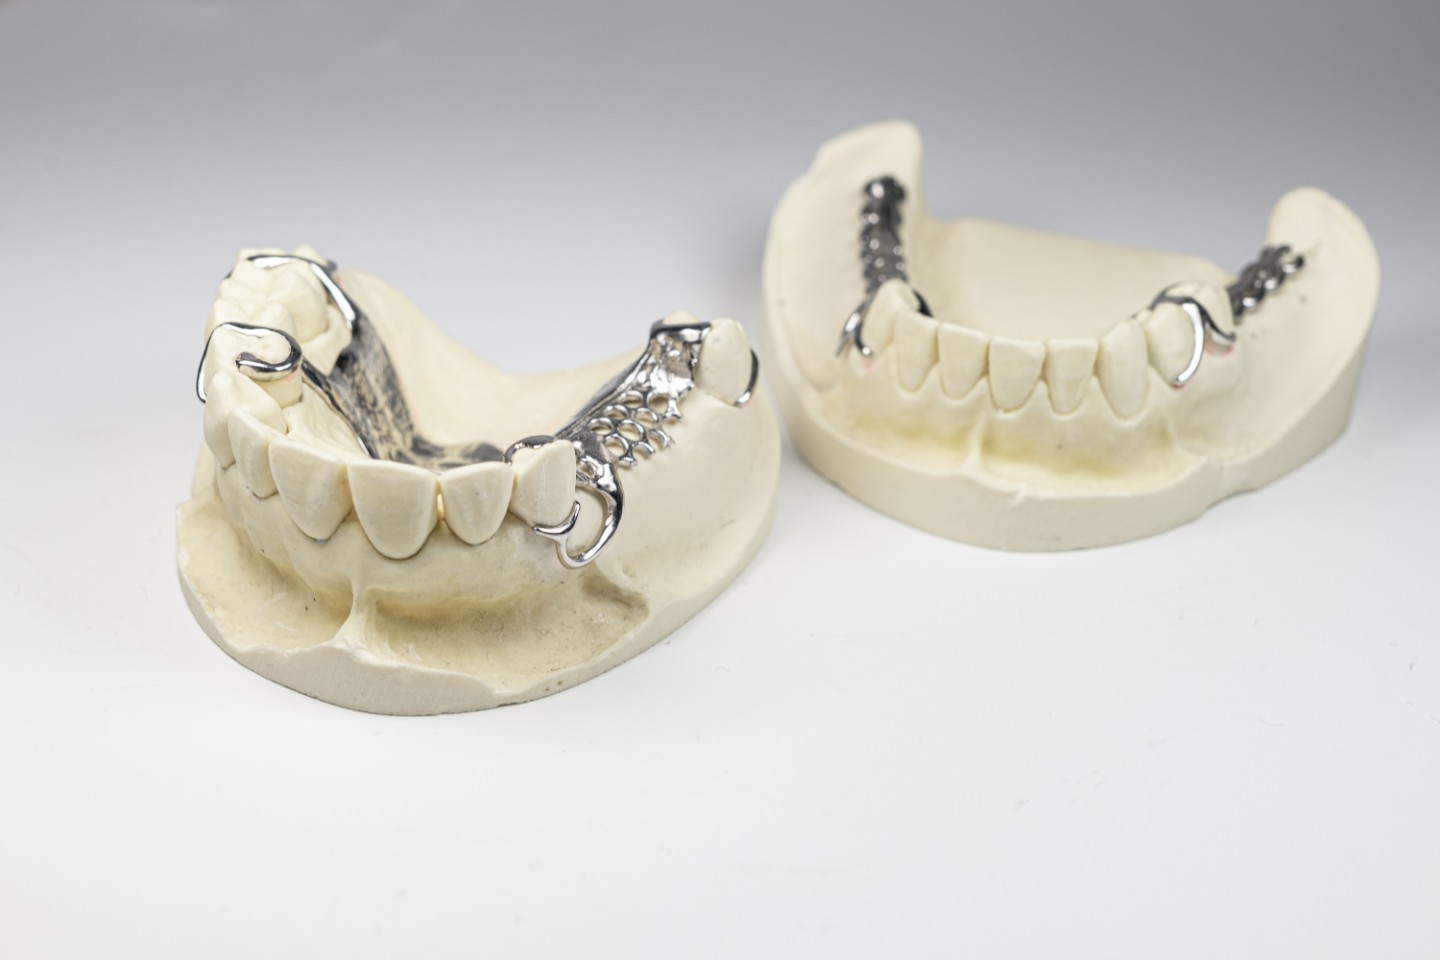 Additiv gefertigte Zahnprothese